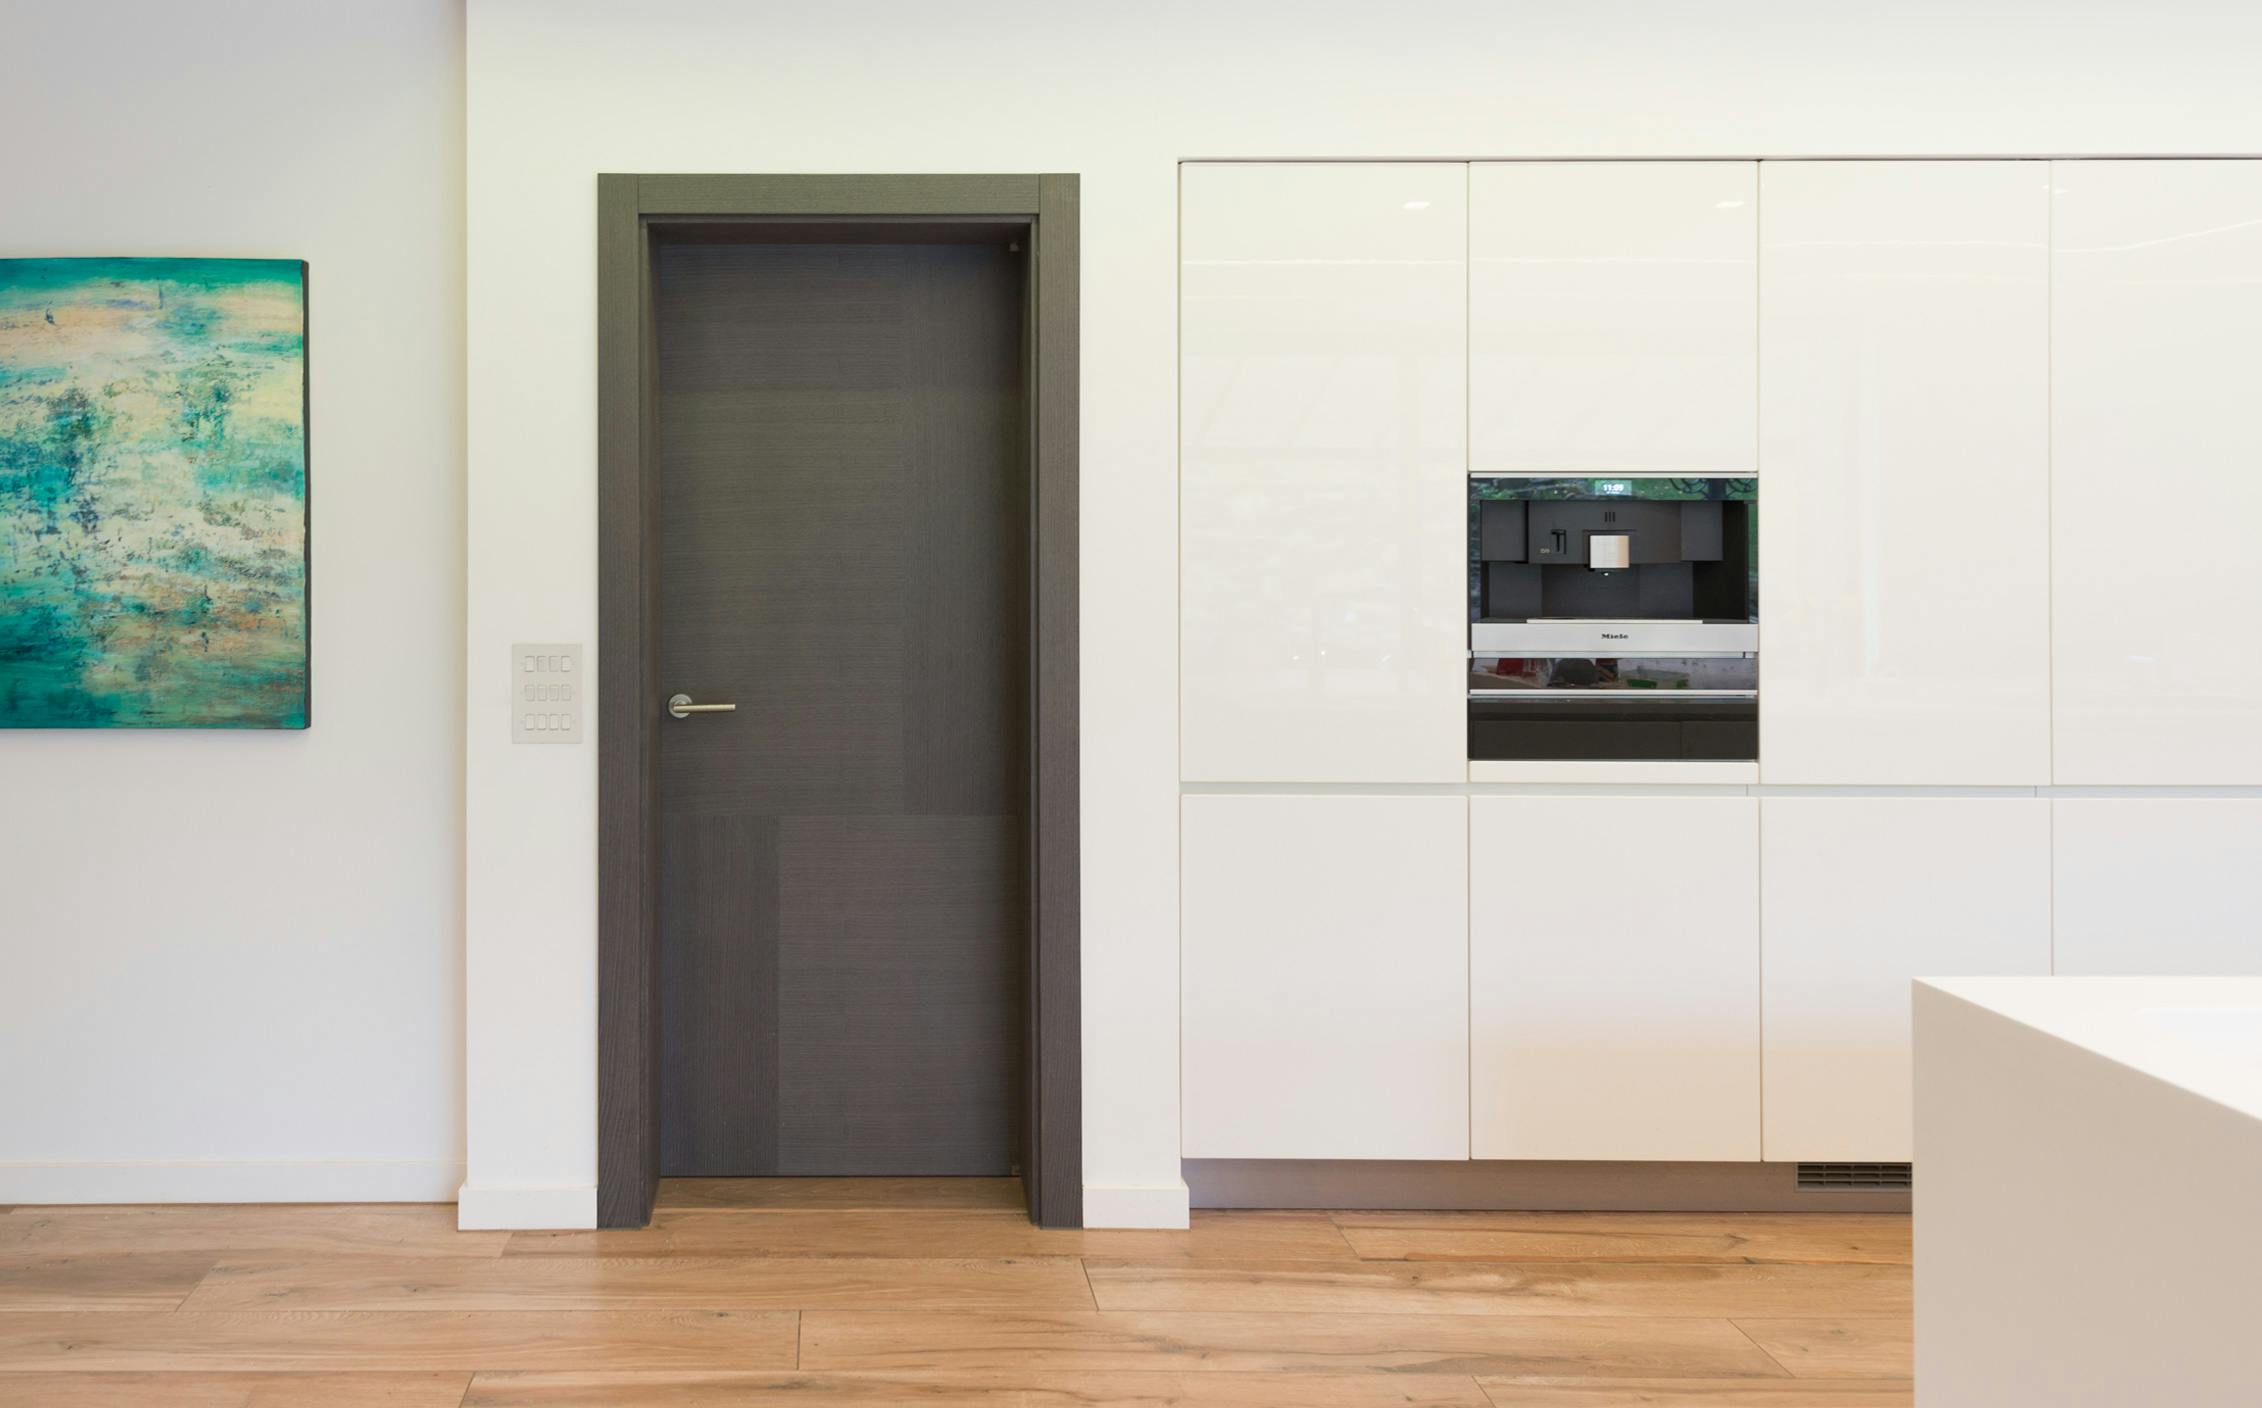 Minimalistic style white kitchen with modern internal door set by Deuren - Vario 4, grey oak finish.